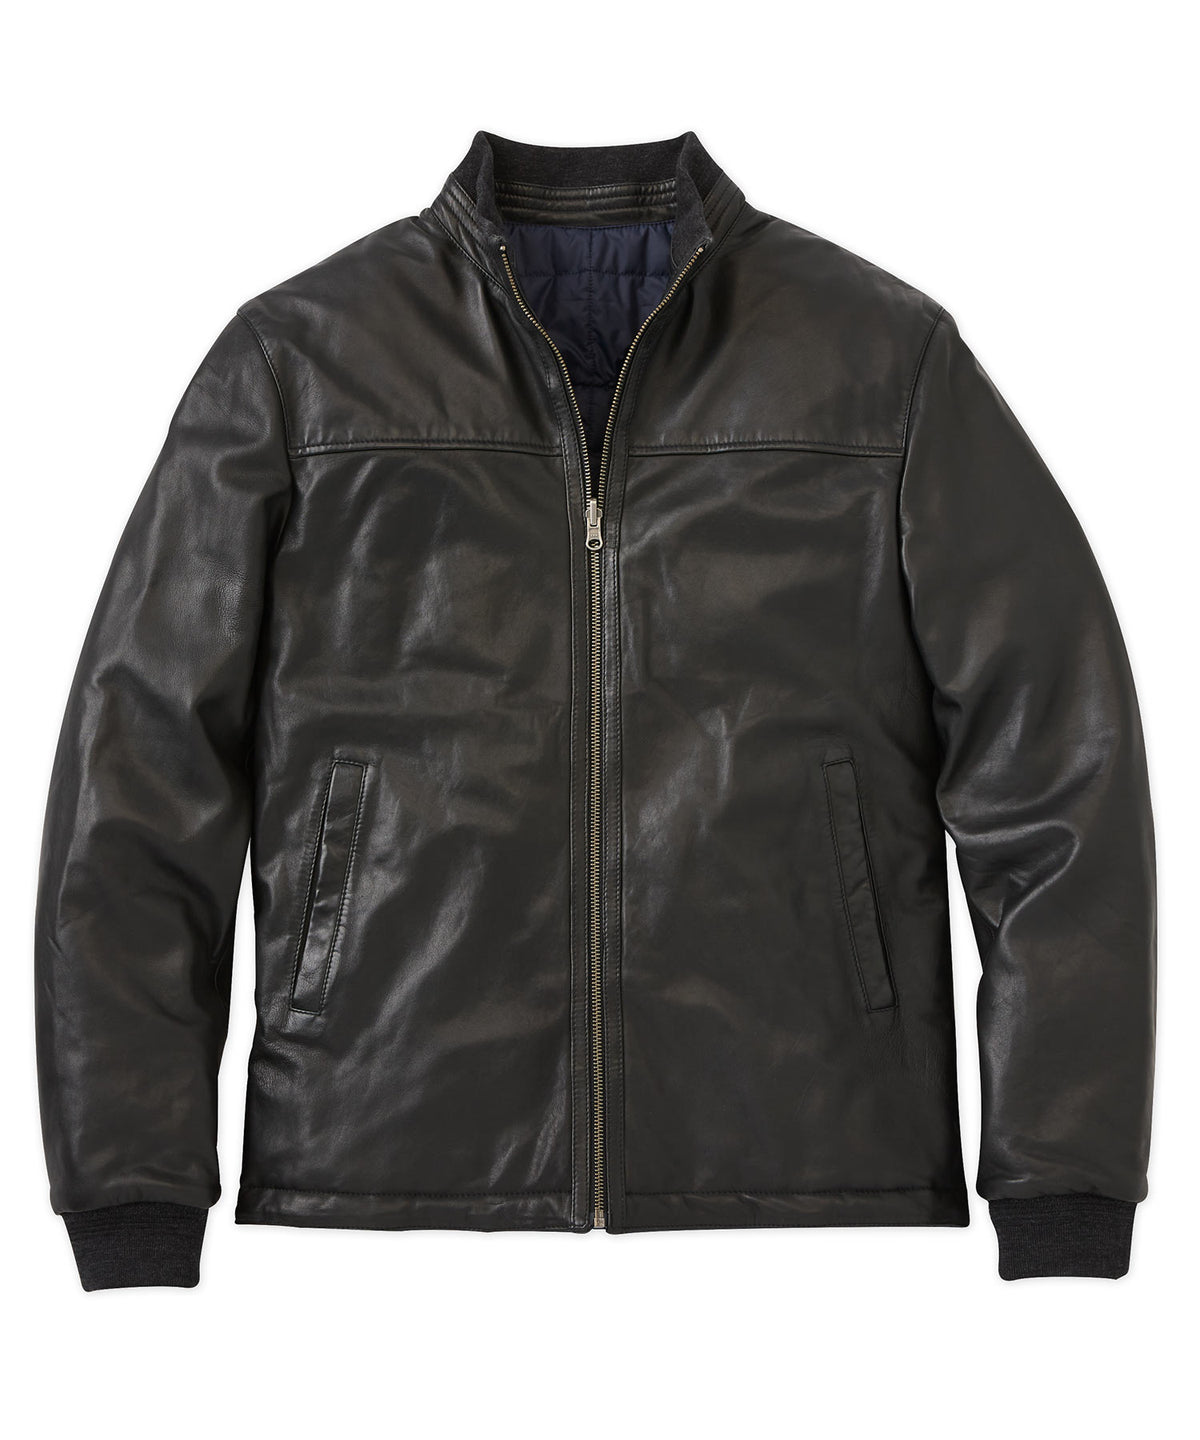 Reversible Leather/Nylon Jacket